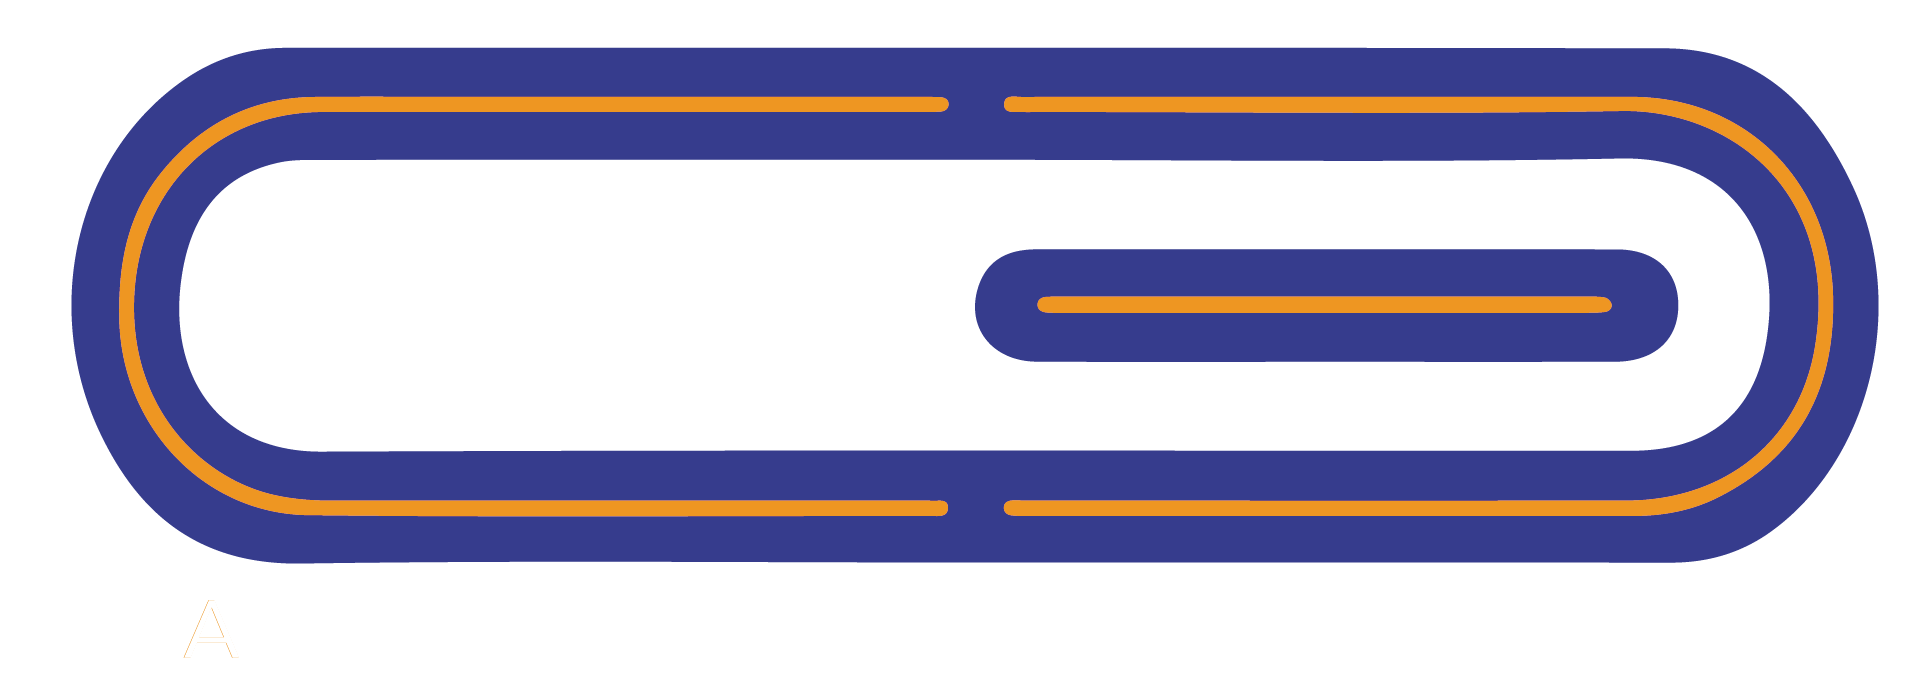 Caramello Ezio